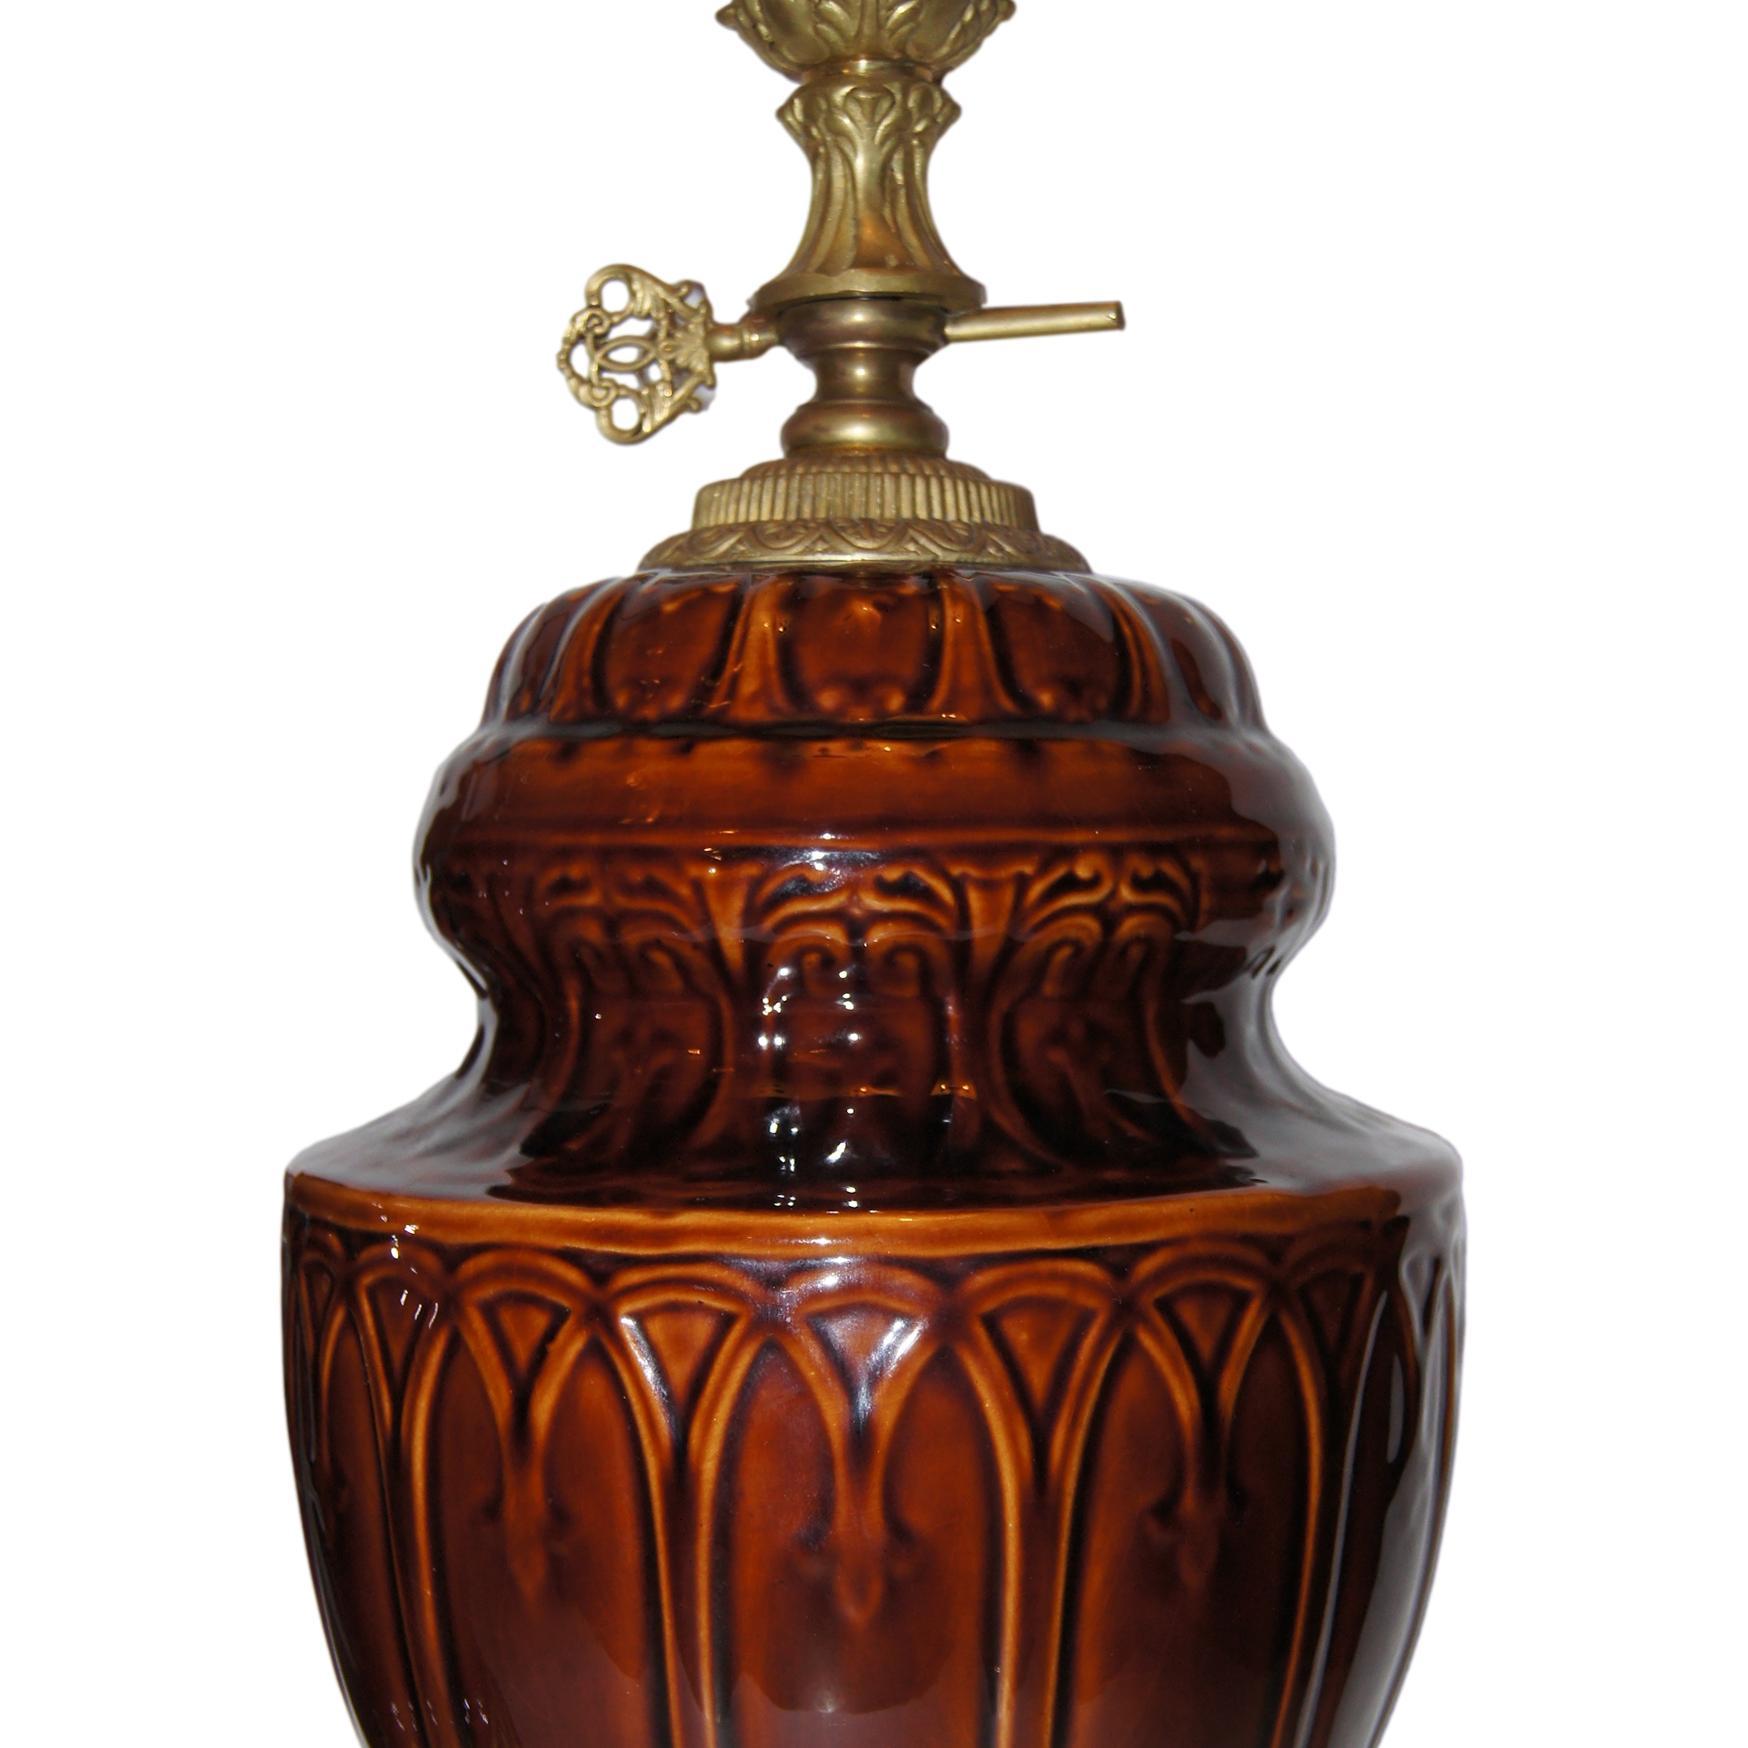 Paire de lampes de table en porcelaine émaillée française des années 1940, dans les tons bruns, avec base en bronze doré.

Mesures :
Hauteur du corps : 17